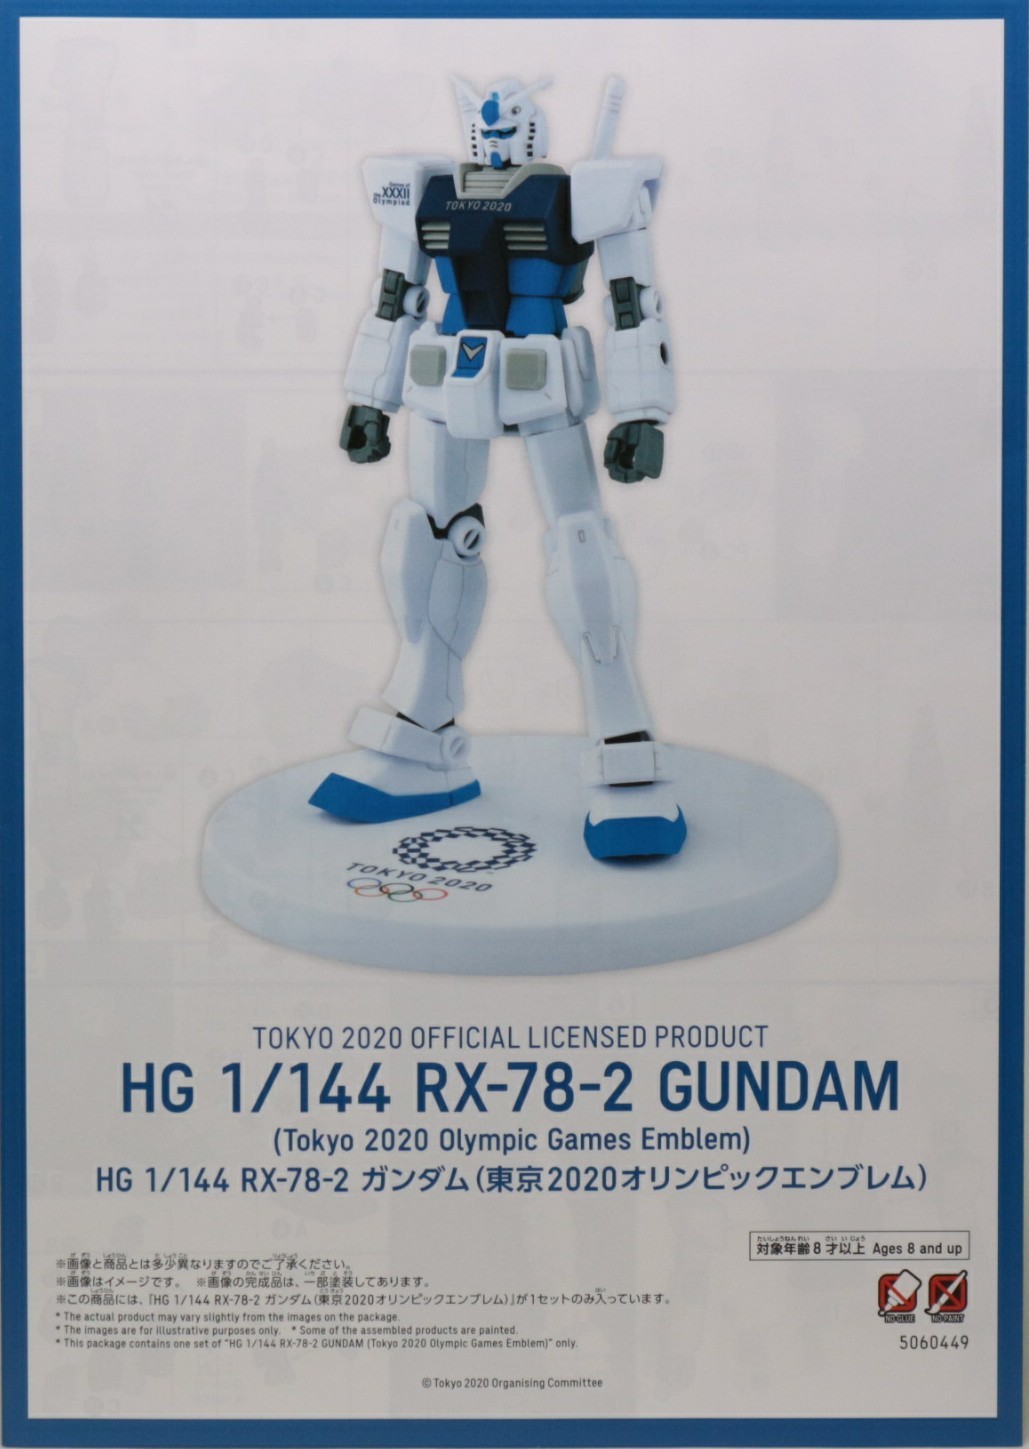 HG 1/144 RX-78-2 ガンダム(東京2020オリンピックエンブレム)/(東京 